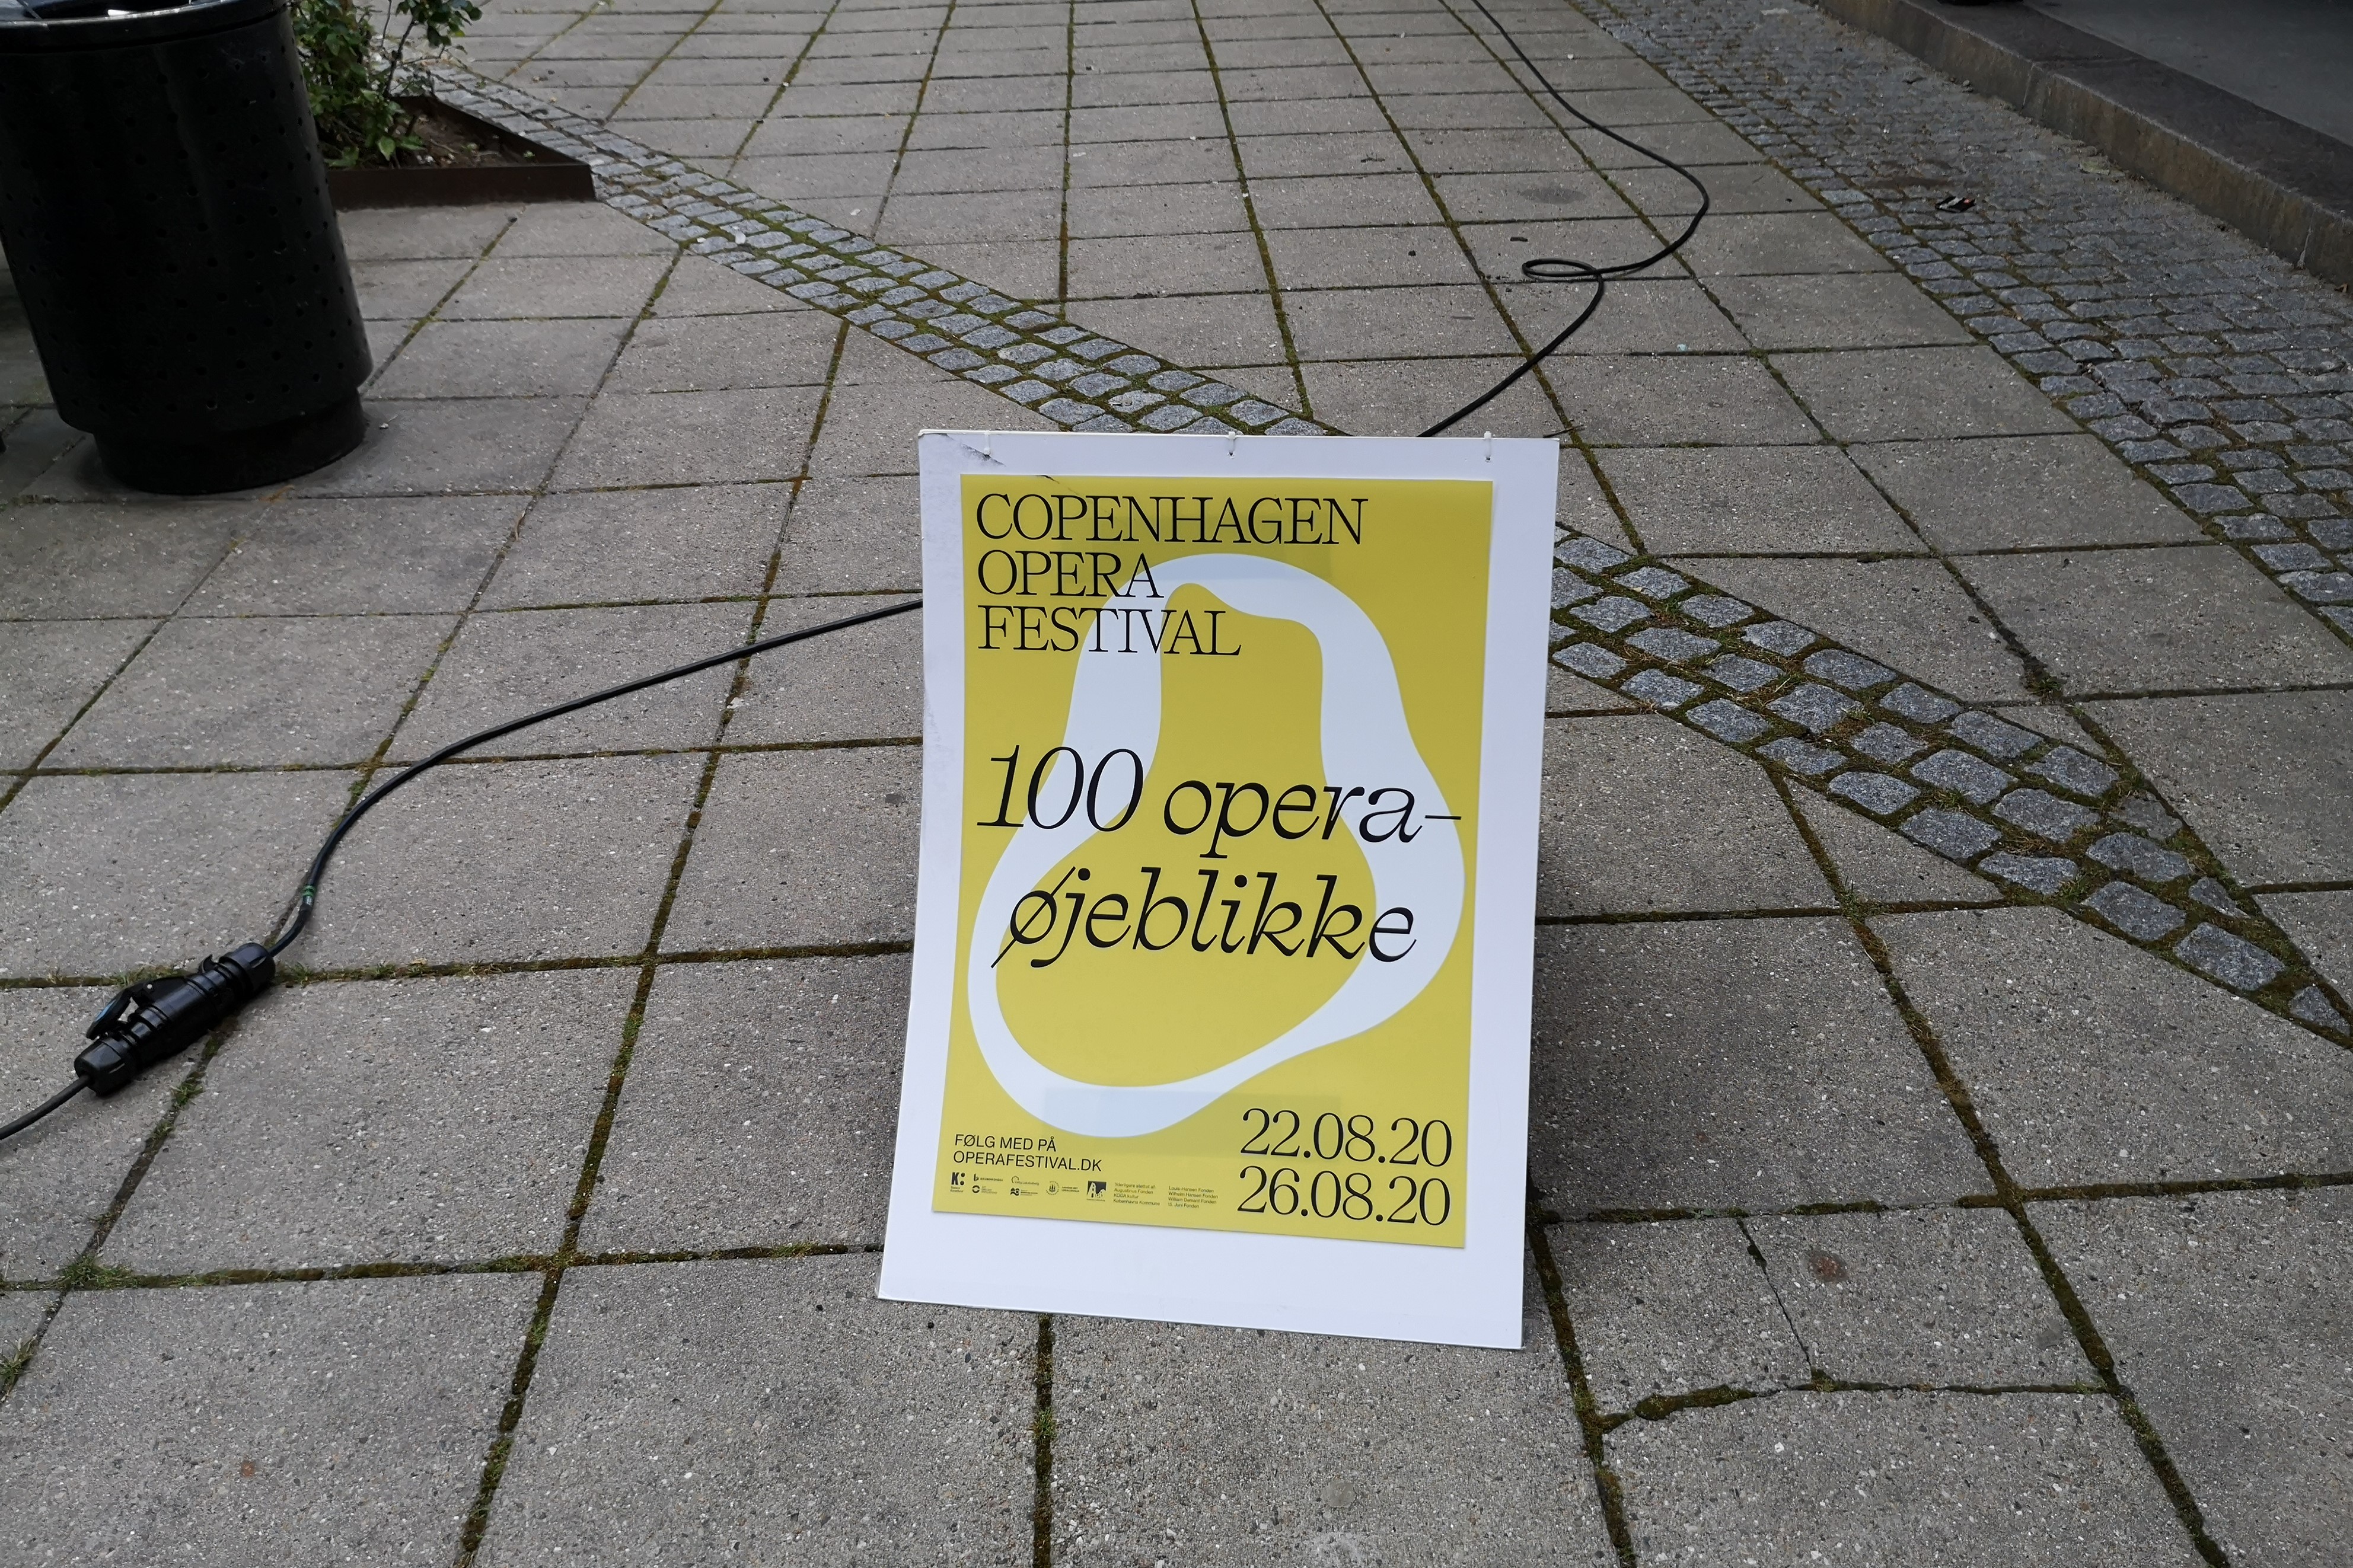 Copenhagen Opera Festivals begivenhed 100 opera-øjeblikke er en gave til København og fandt i år sted fra den 22.-26. august.